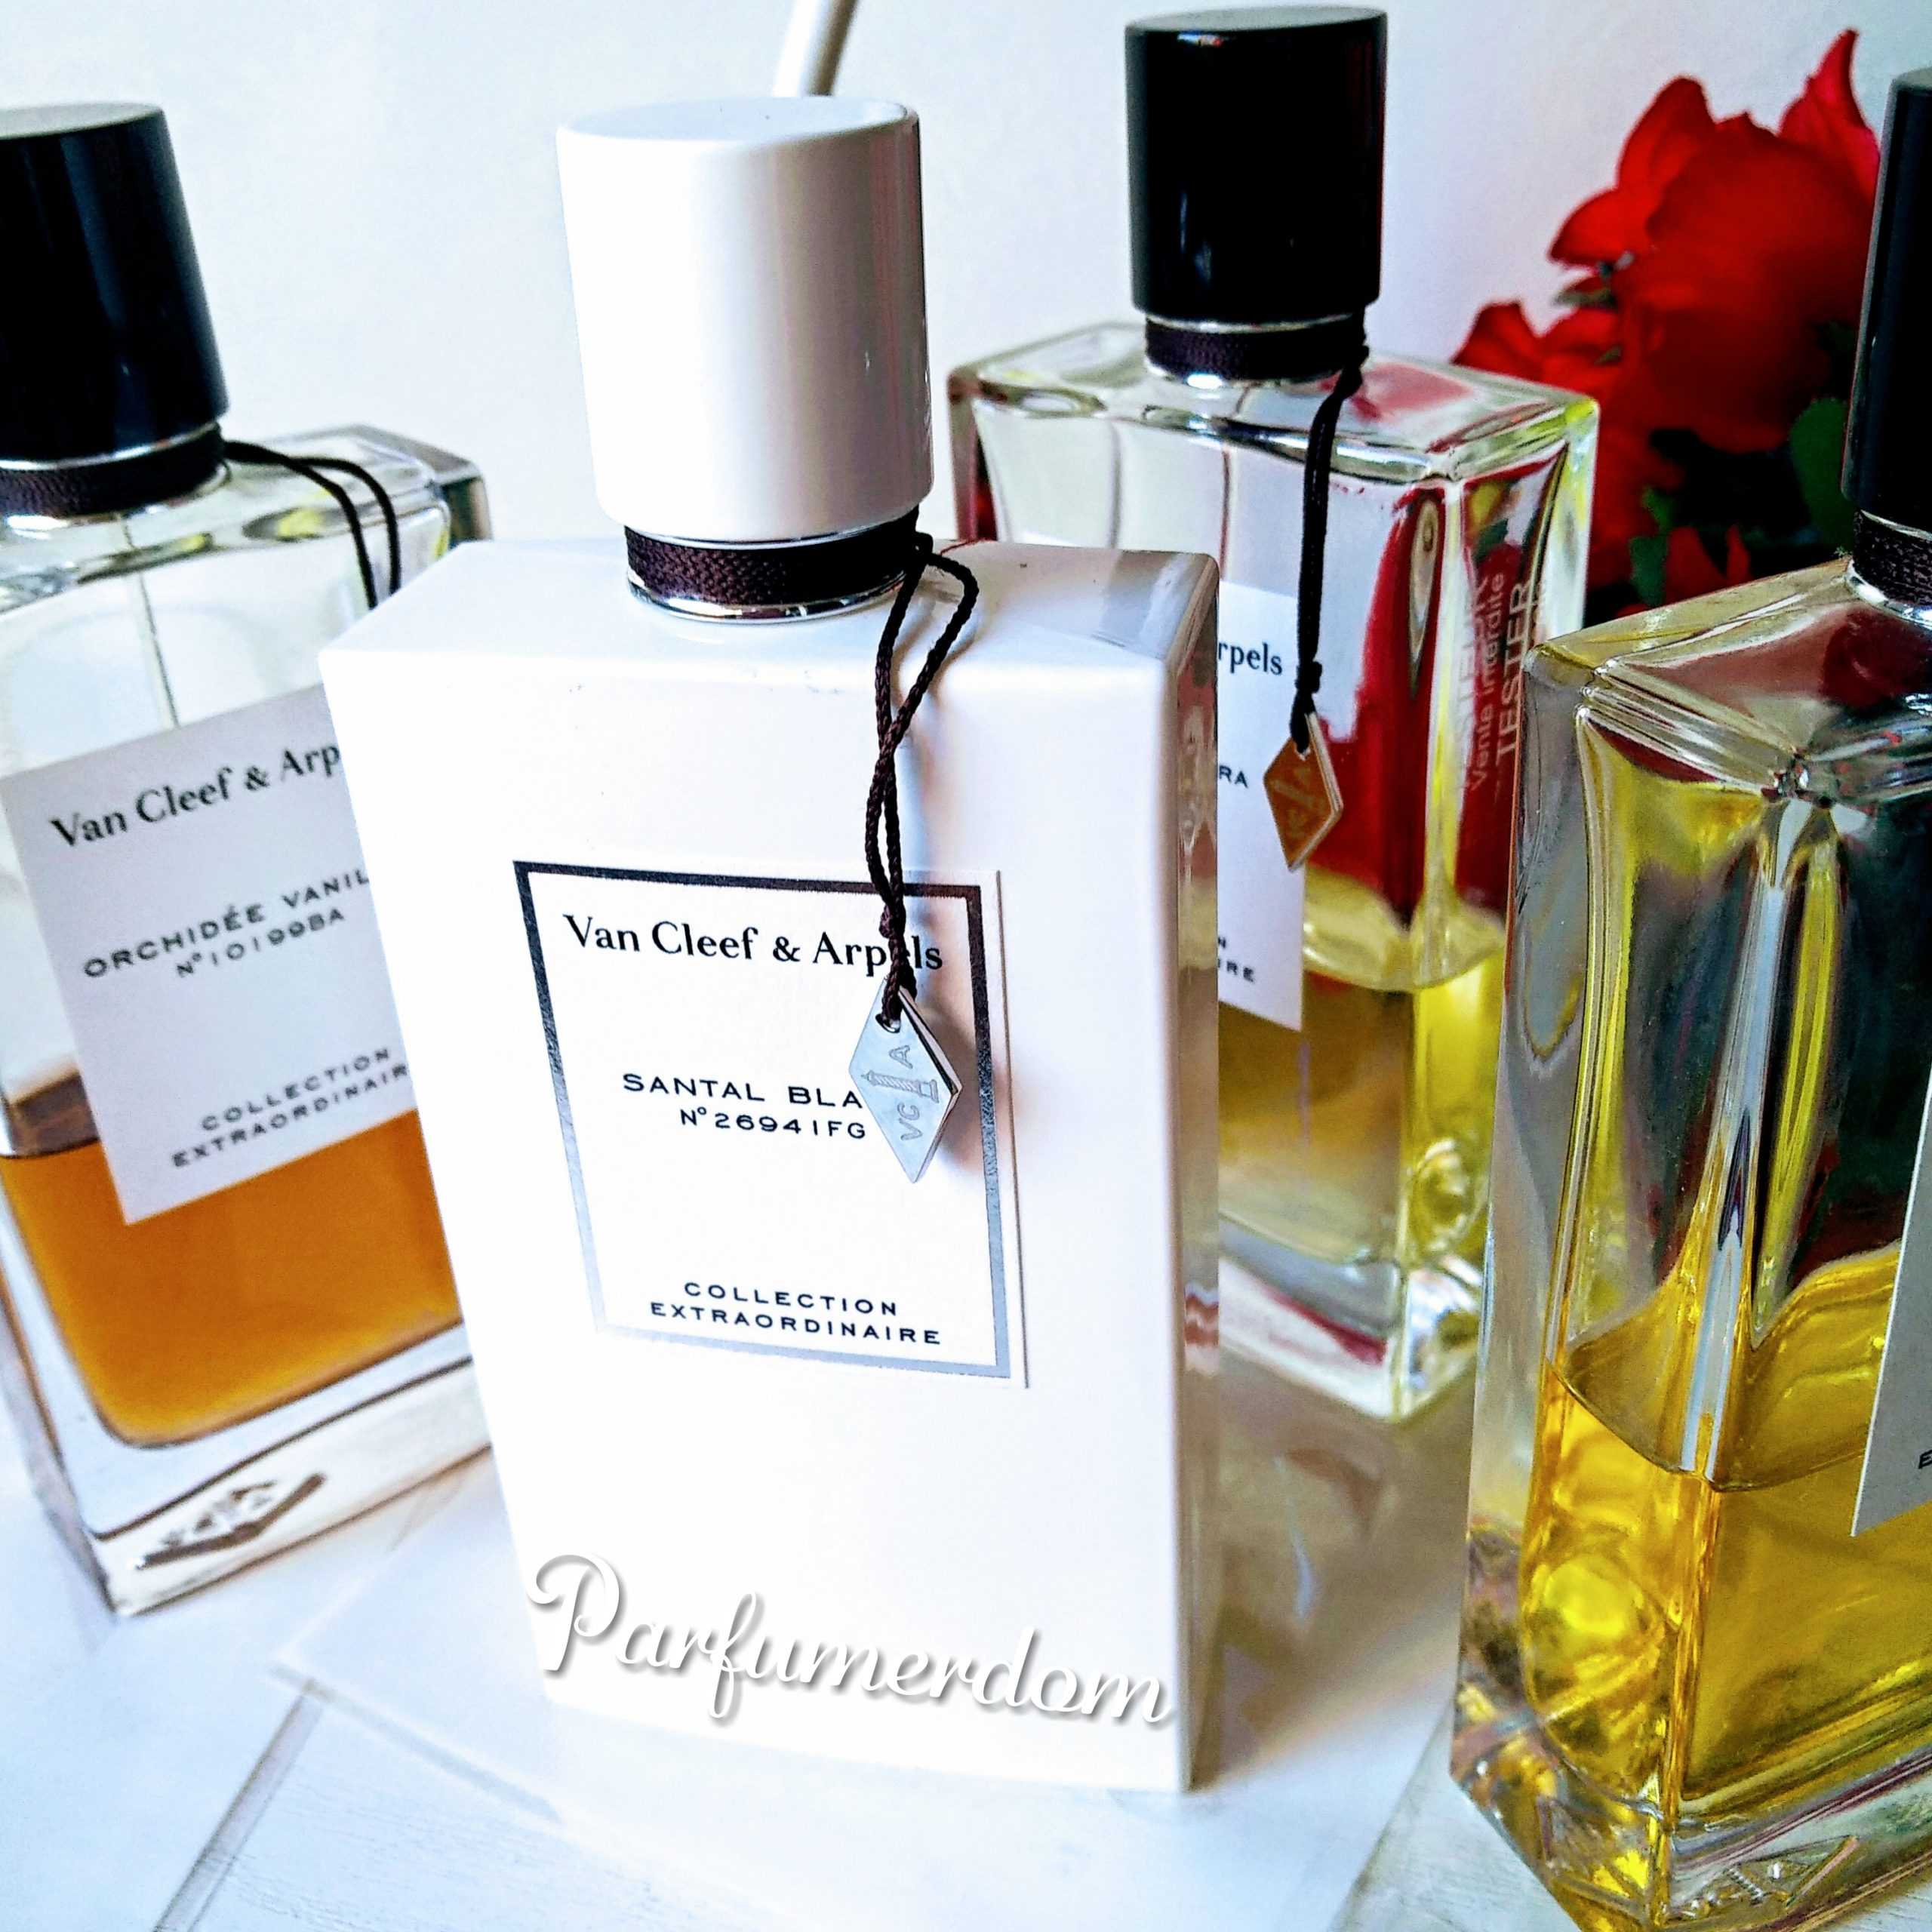 Селективная парфюмерия: отличия от массовой, популярные бренды